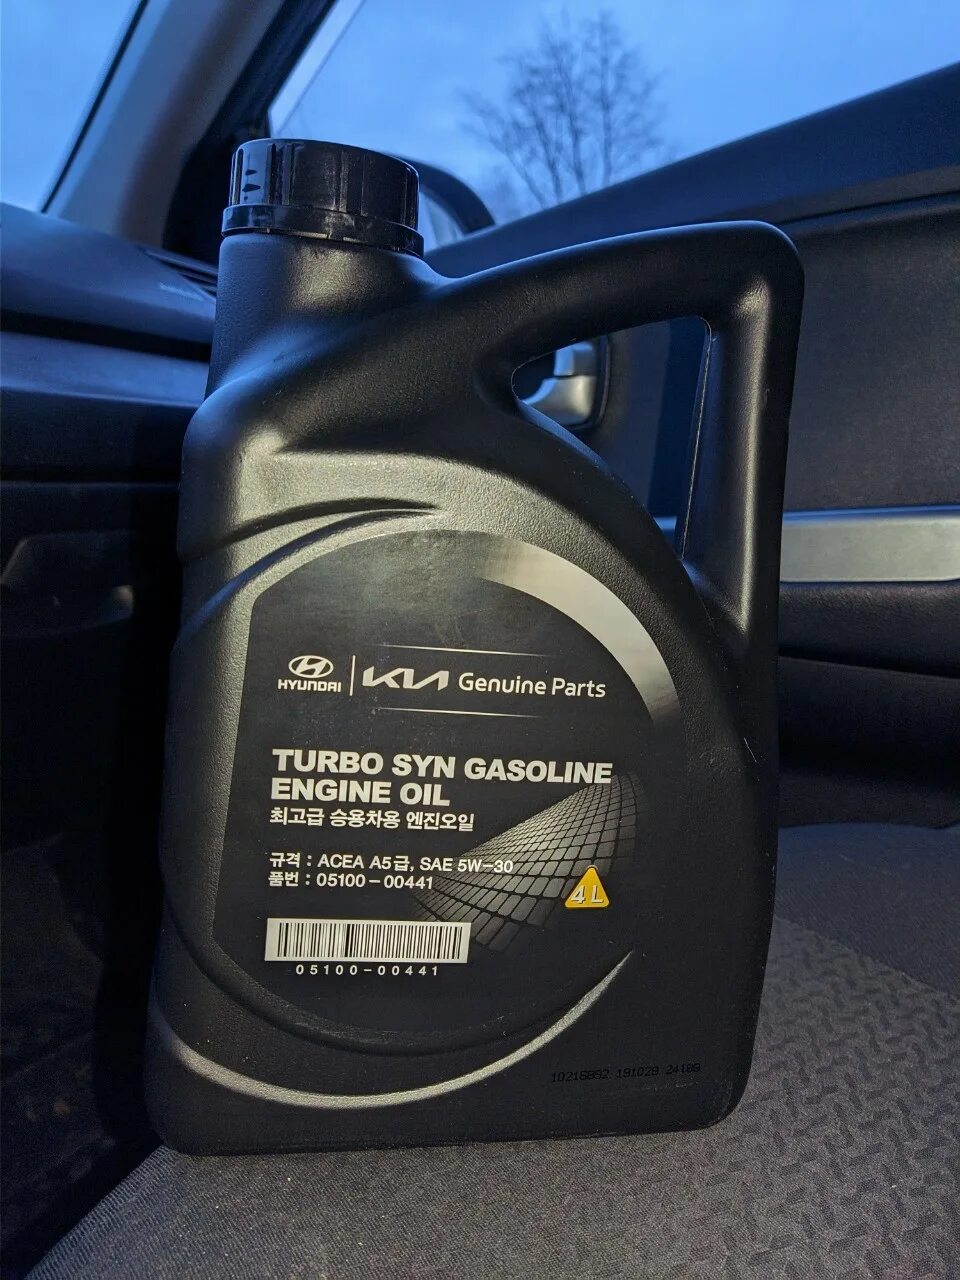 Hyundai Turbo gasoline 5w-30. Hyundai Turbo syn gasoline 5w-30. Масло Hyundai 5w30 Turbo syn. Kia Turbo syn 5w30. Масло киа 5 30